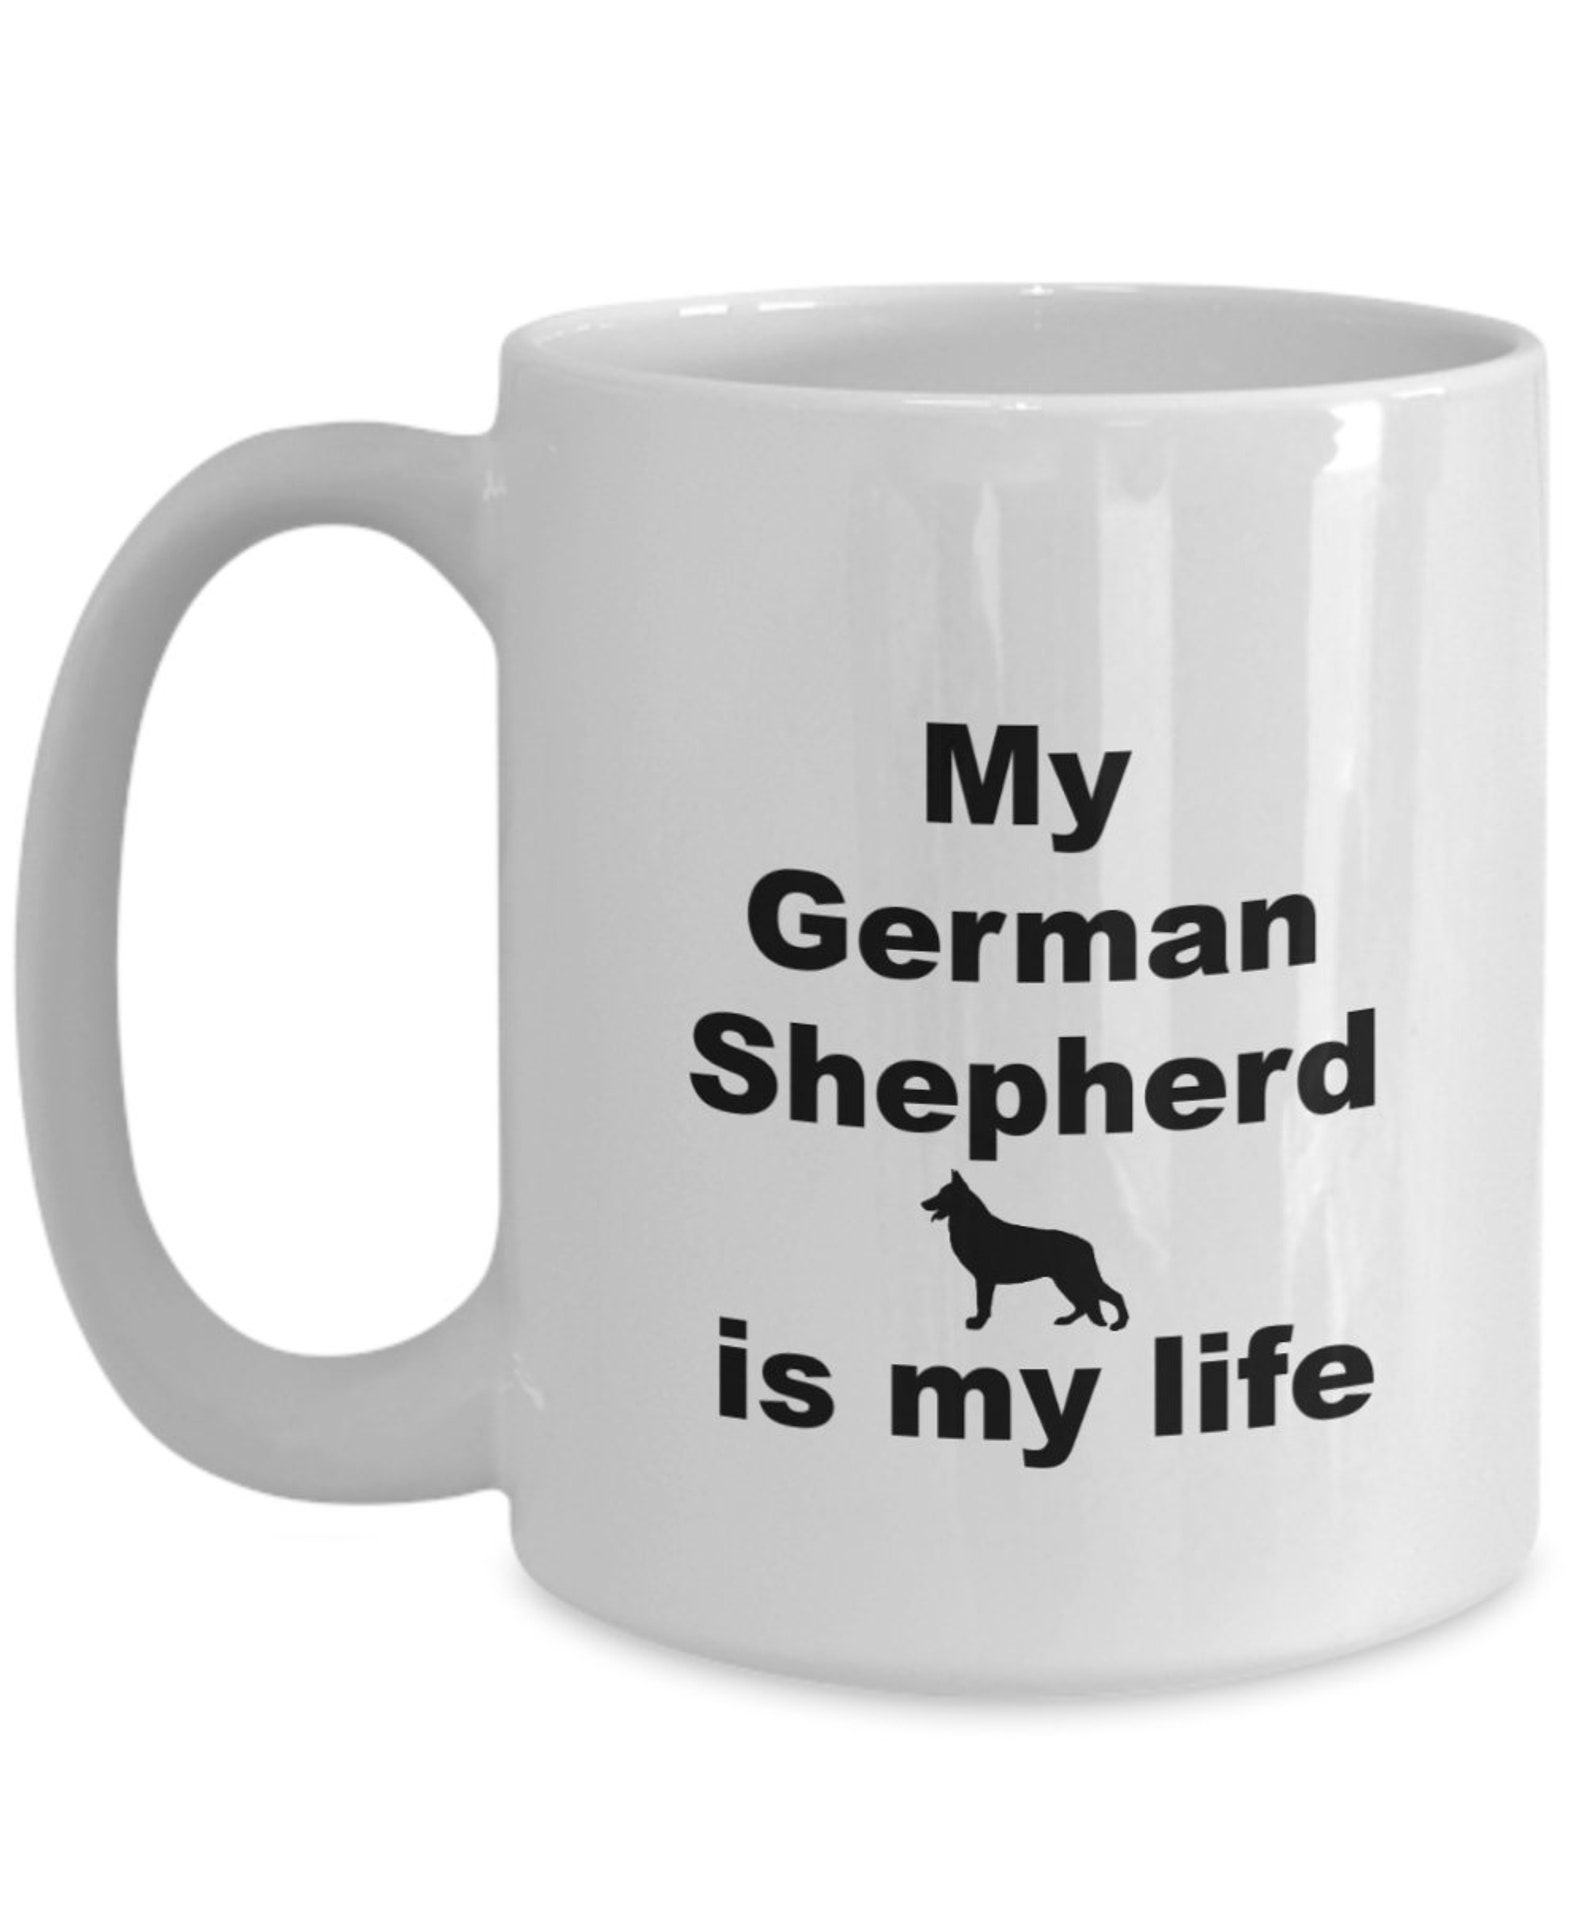 German shepherd coffee mug gift for german shepherd lover | Etsy